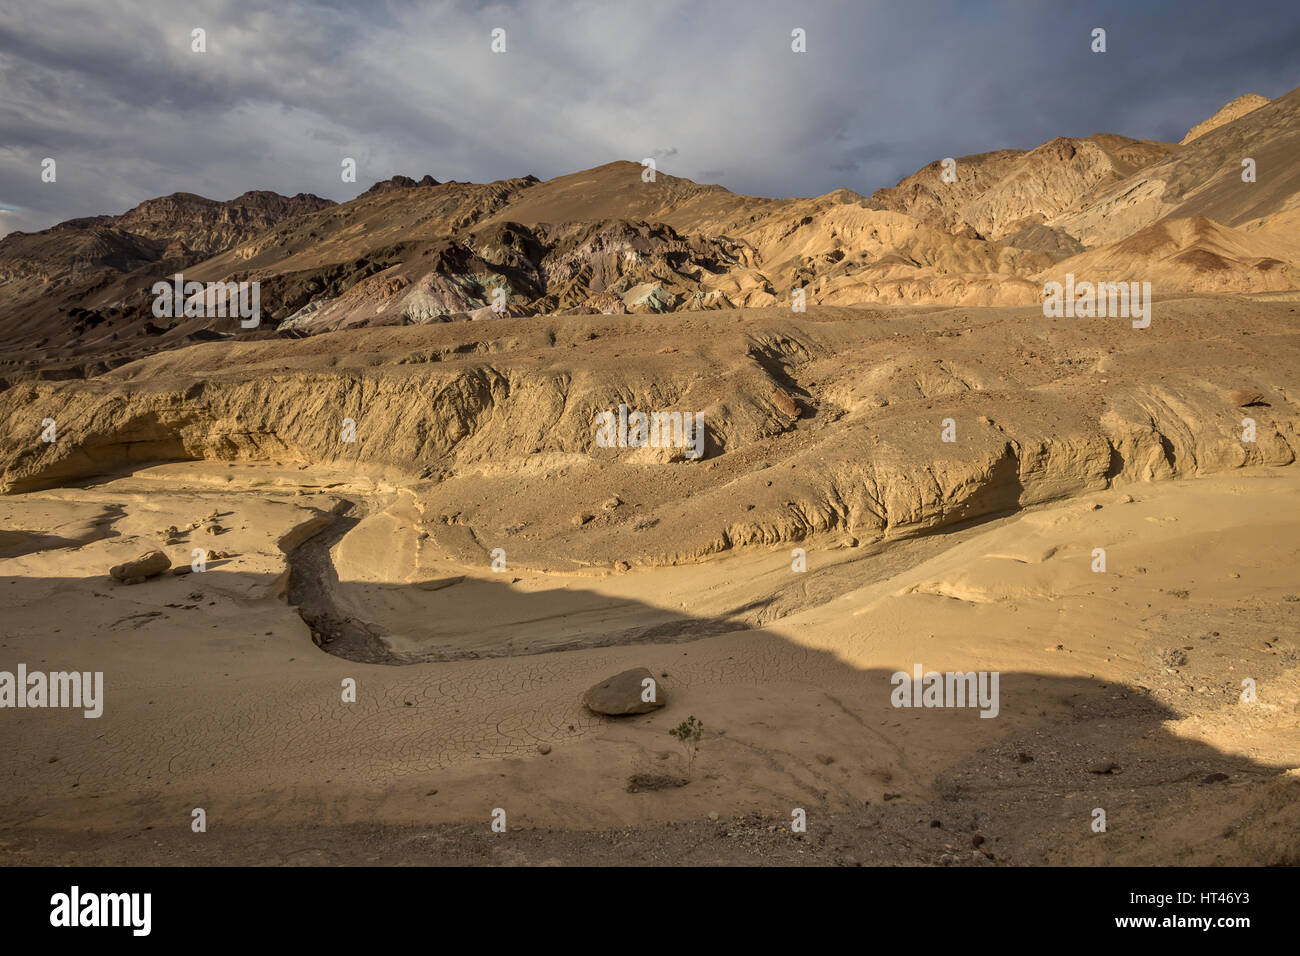 La palette de l'artiste, les Black Mountains, artiste, Death Valley National Park, Death Valley, California, United States, Amérique du Nord Banque D'Images